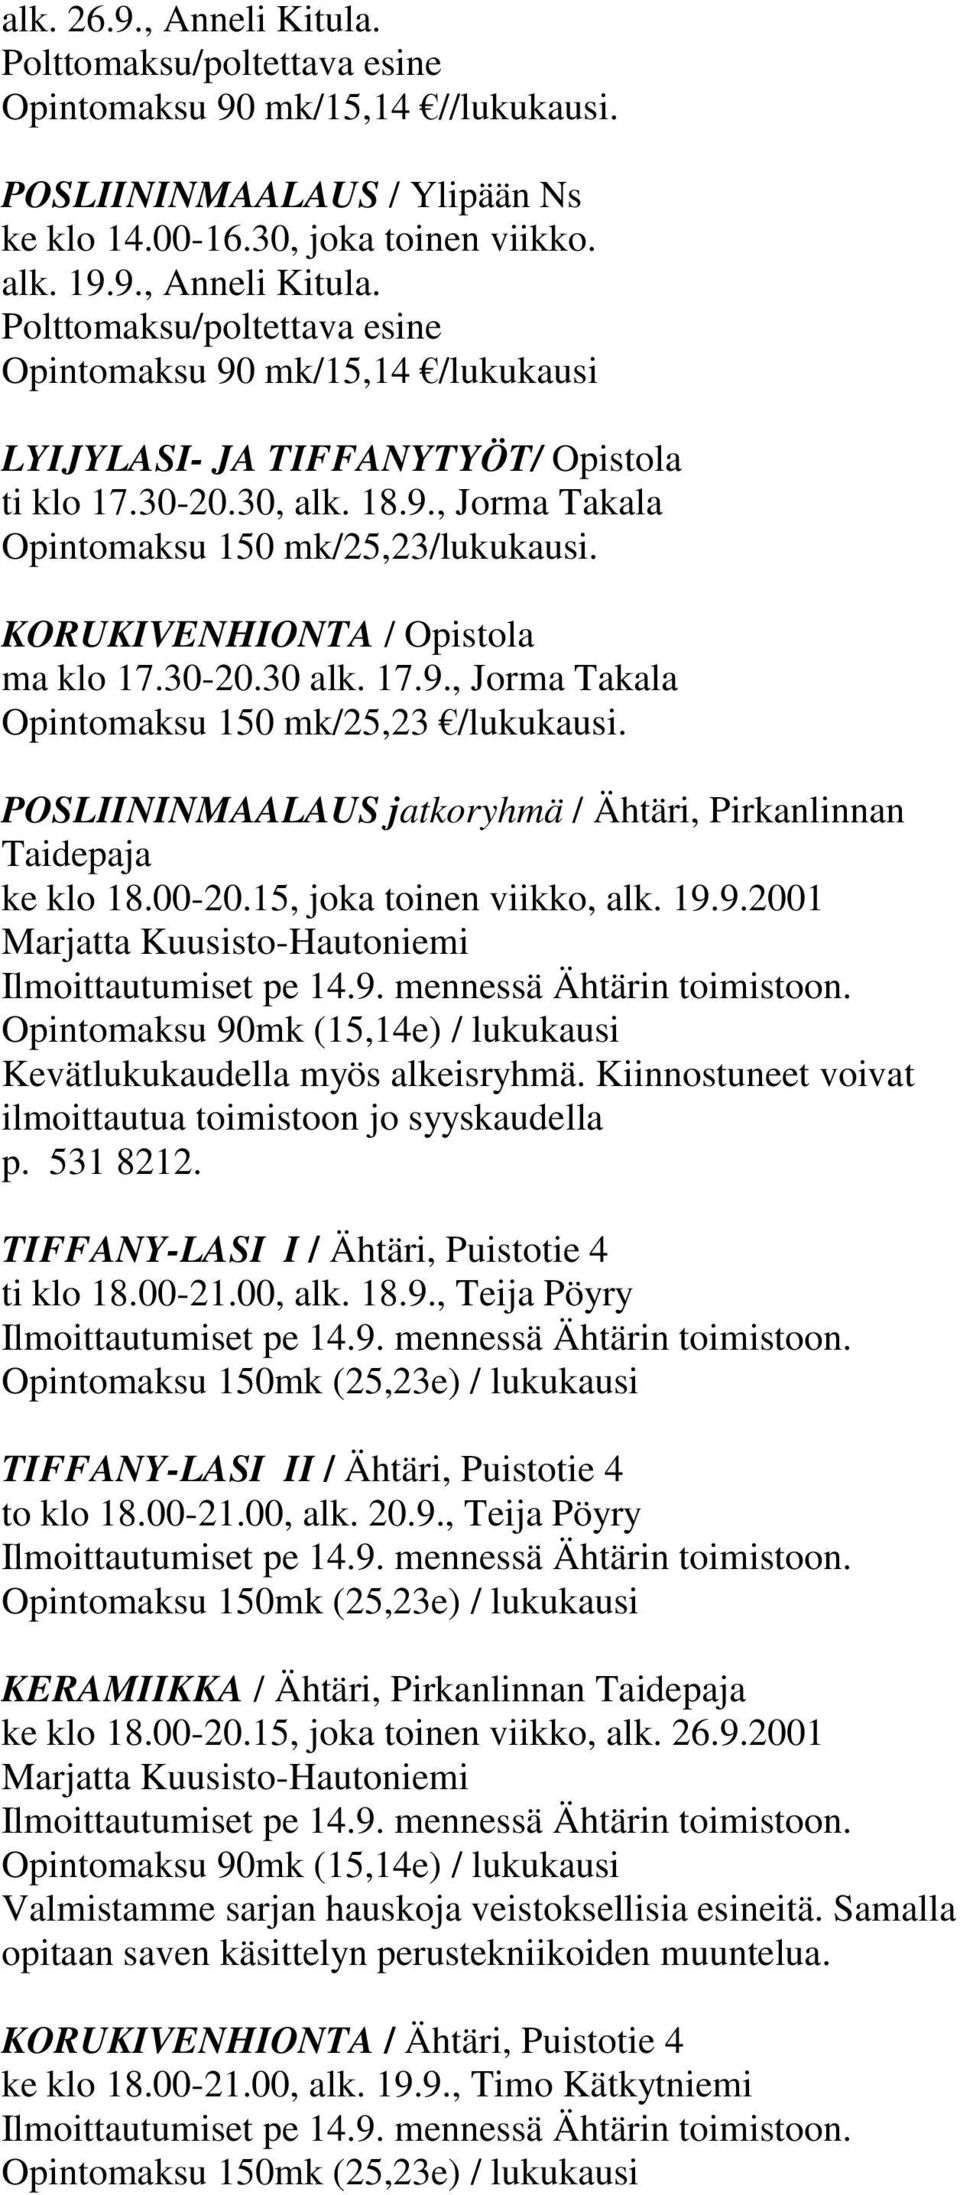 POSLIININMAALAUS jatkoryhmä / Ähtäri, Pirkanlinnan Taidepaja ke klo 18.00-20.15, joka toinen viikko, alk. 19.9.2001 Marjatta Kuusisto-Hautoniemi Ilmoittautumiset pe 14.9. mennessä Ähtärin toimistoon.